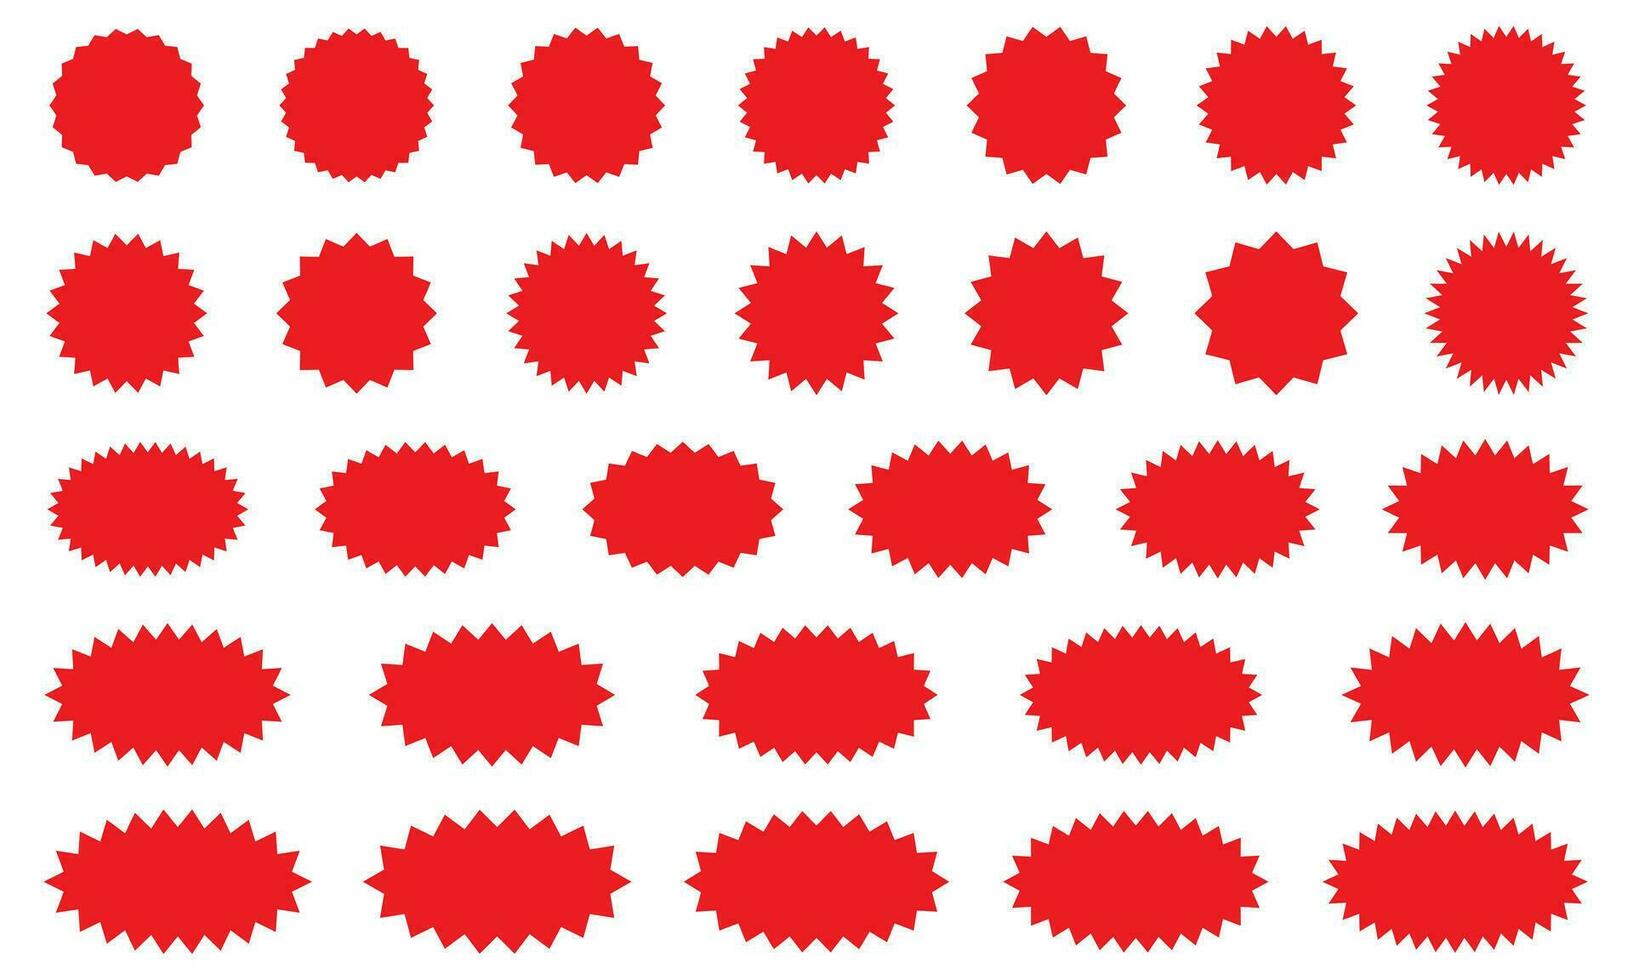 starburst rosso etichetta impostato - collezione di speciale offrire vendita il giro e ovale sunburst etichette e pulsanti isolato su bianca sfondo. adesivi e badge con stella bordi per promo pubblicità. vettore